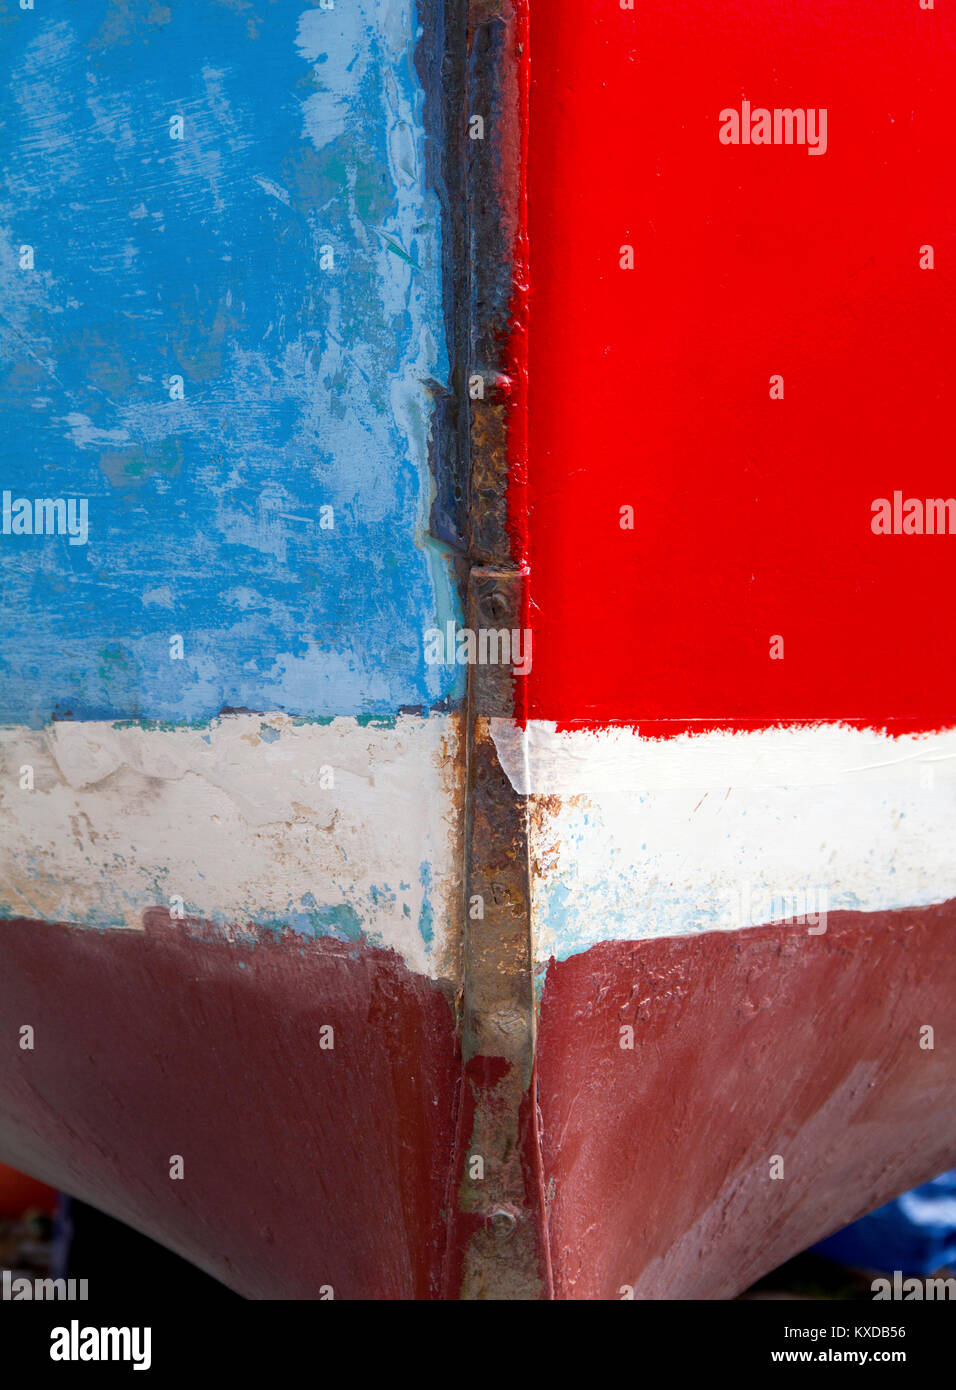 Una vista astratta della prua di una barca, dipinta in blocchi di differenti colori. Foto Stock